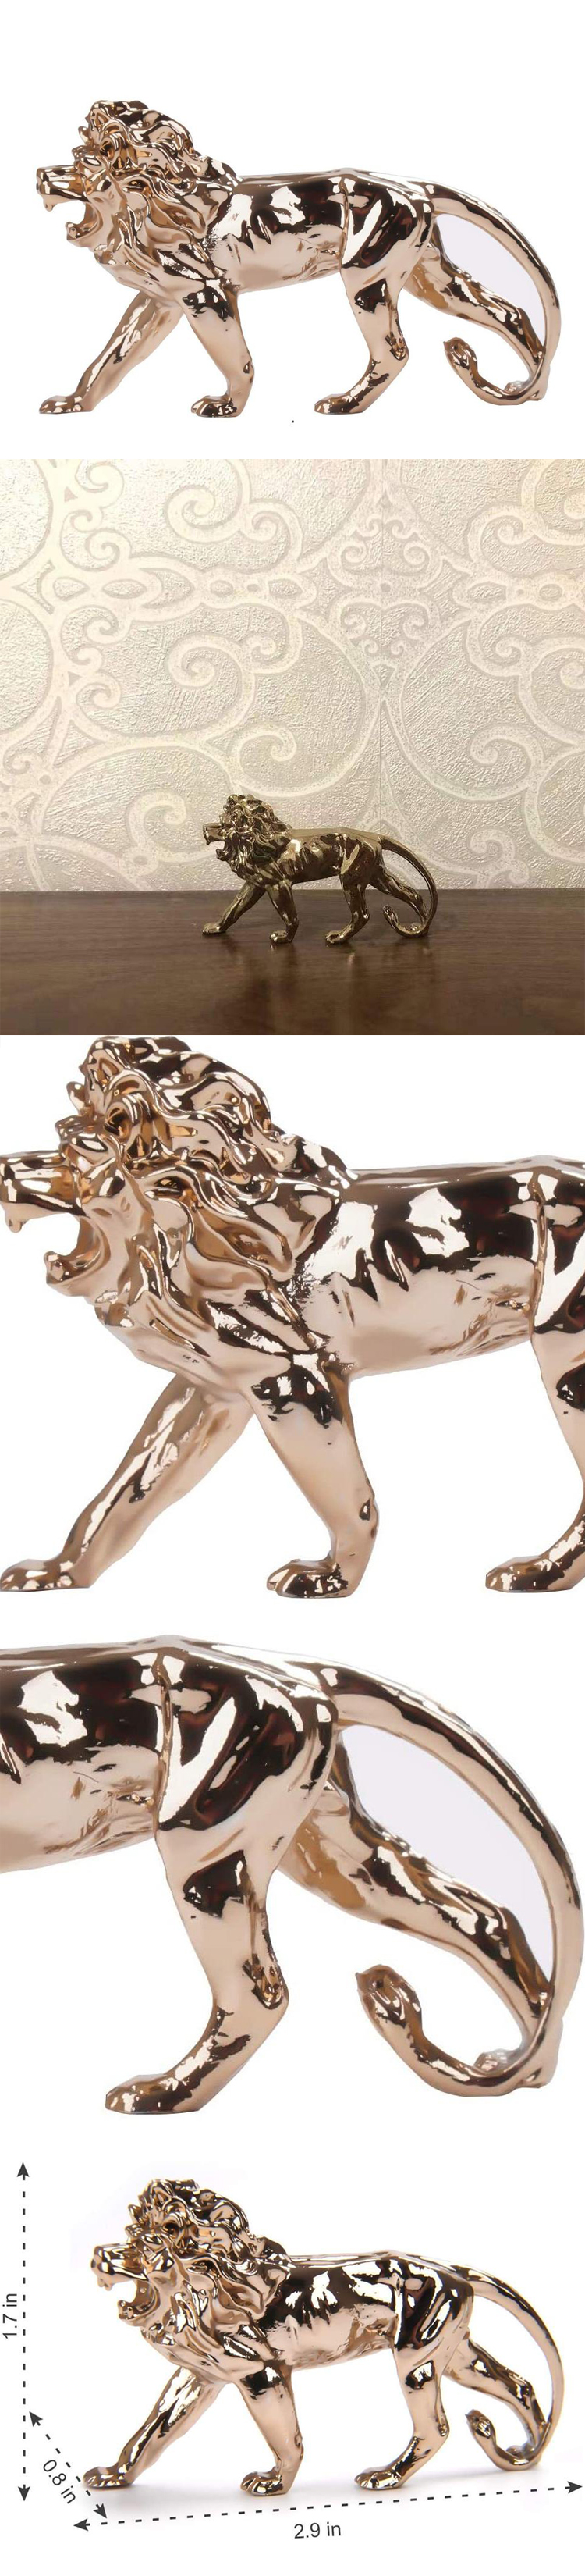 HWC Lion shaped aluminum Statue Sculpture table decoration